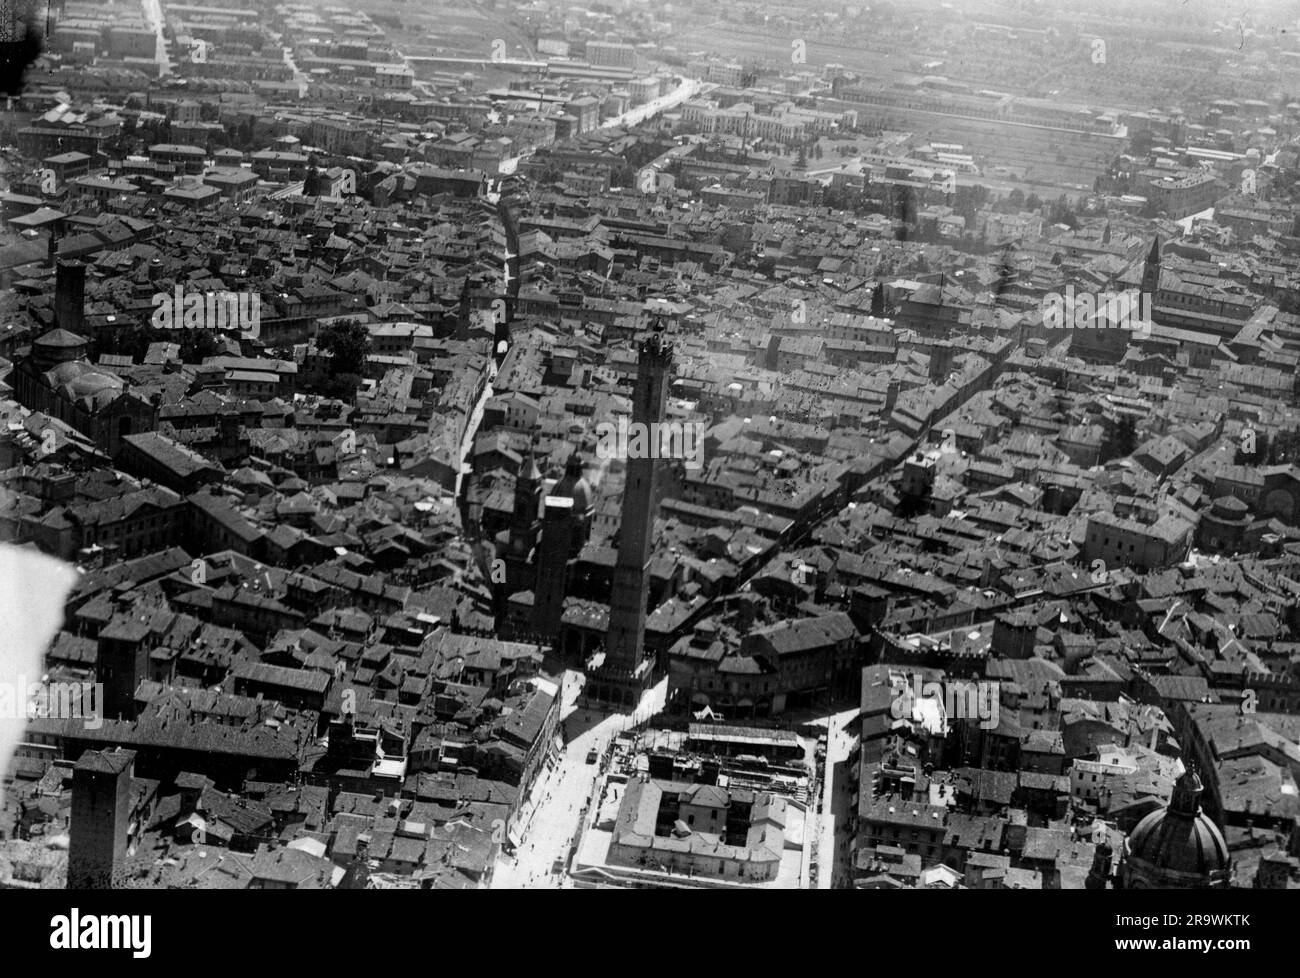 Bologna - foto panoramica aerea degli anni 30 Stock Photo